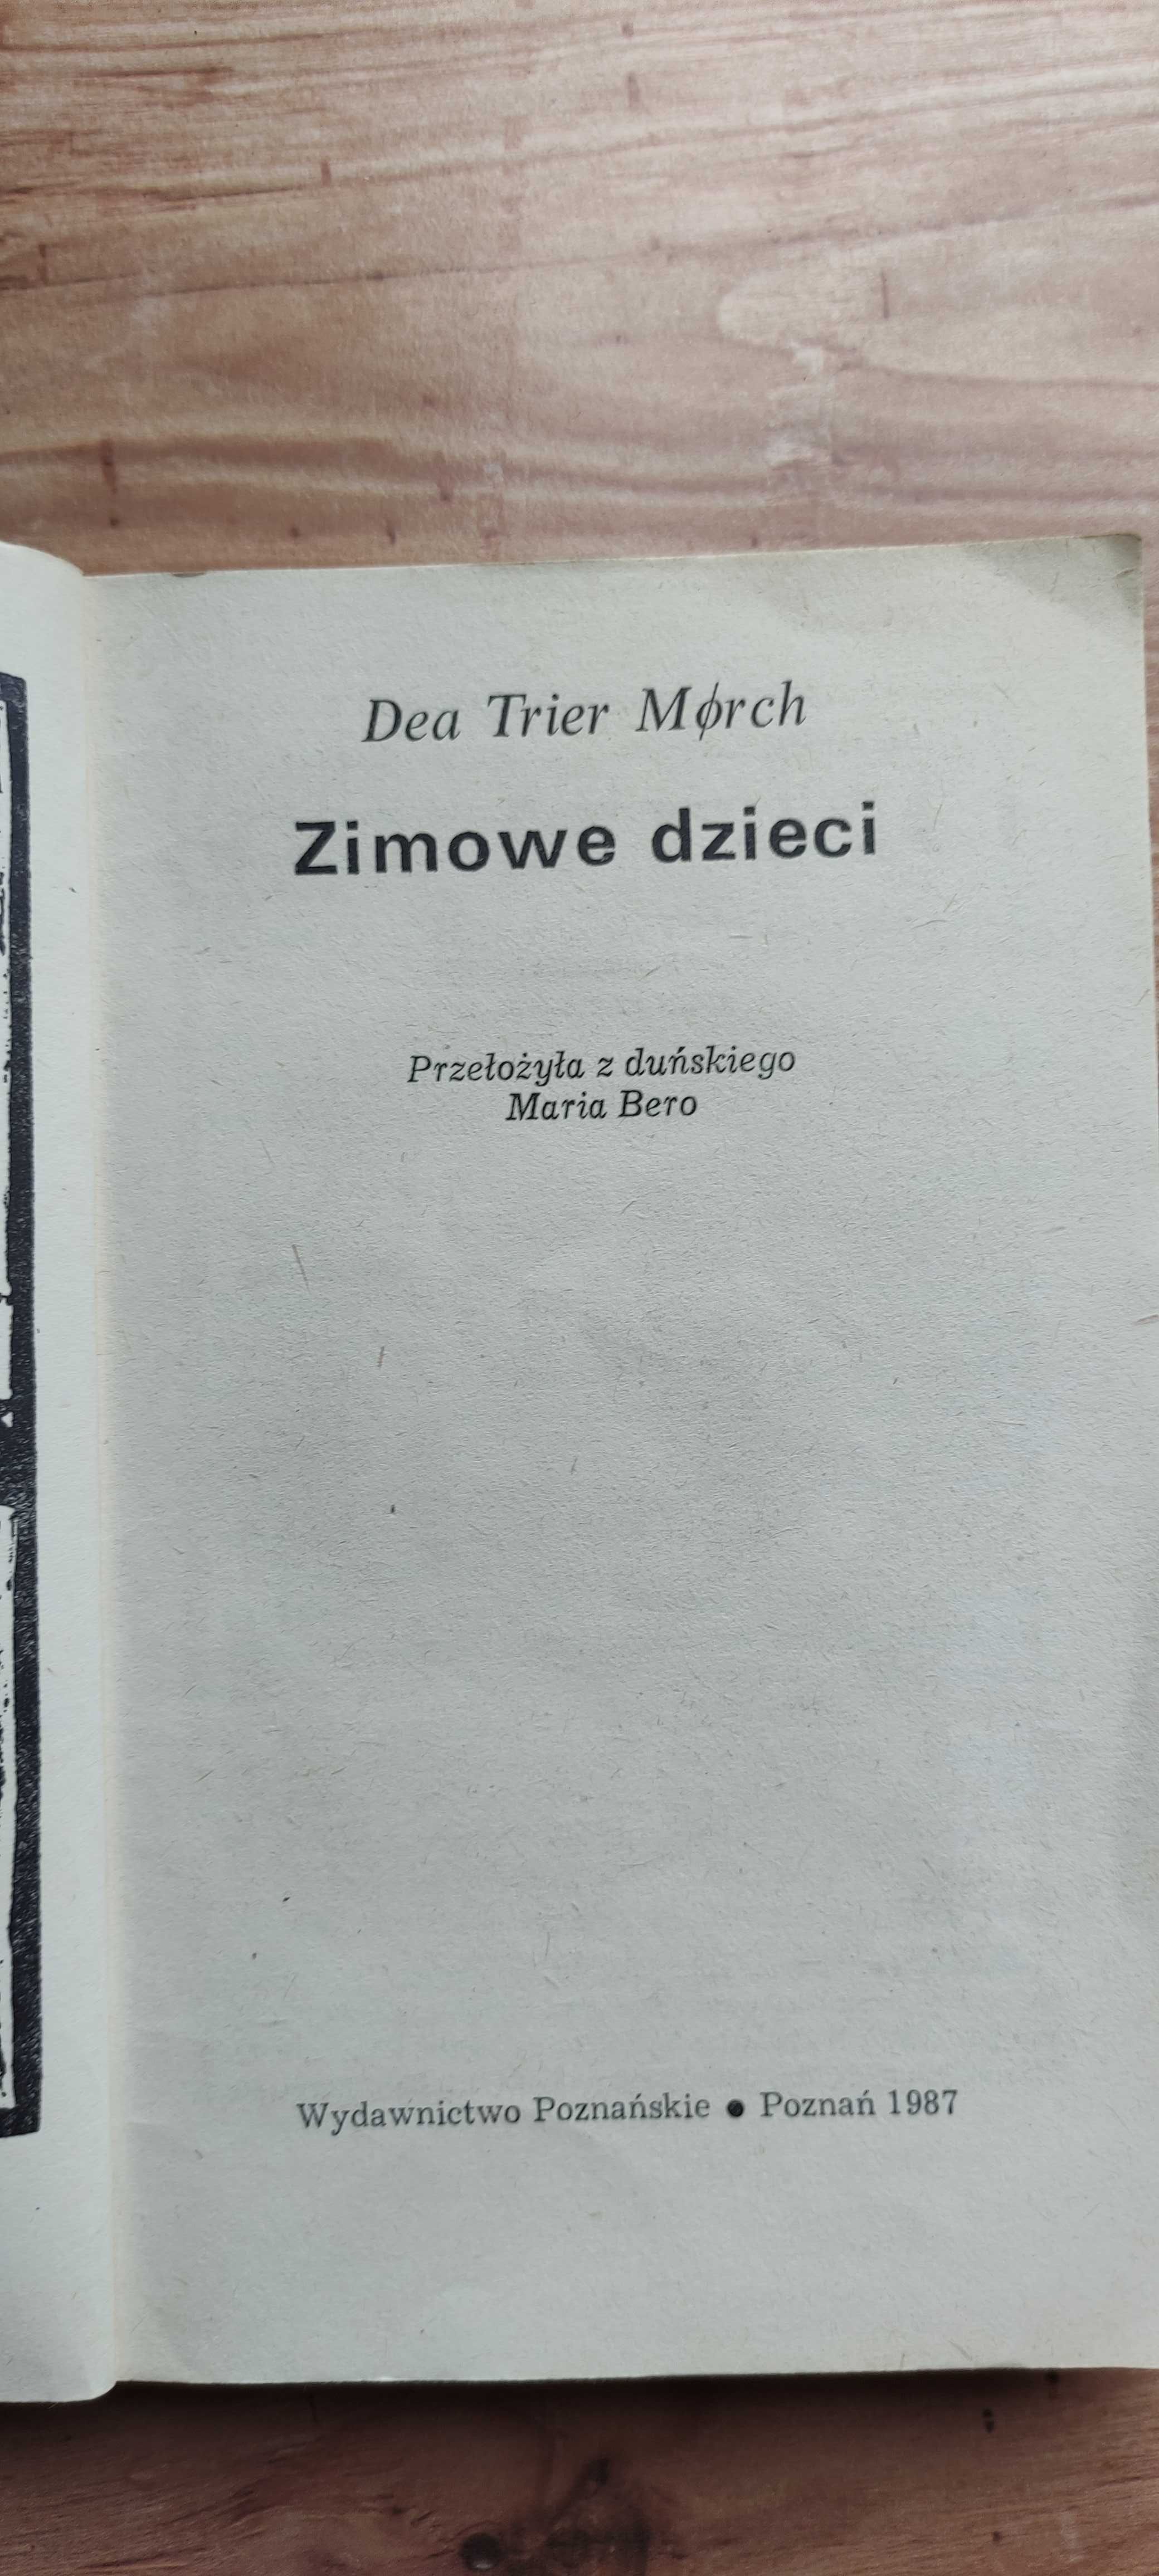 Książka "Zimowe dzieci" Dea Trier Morch, 1987 r.